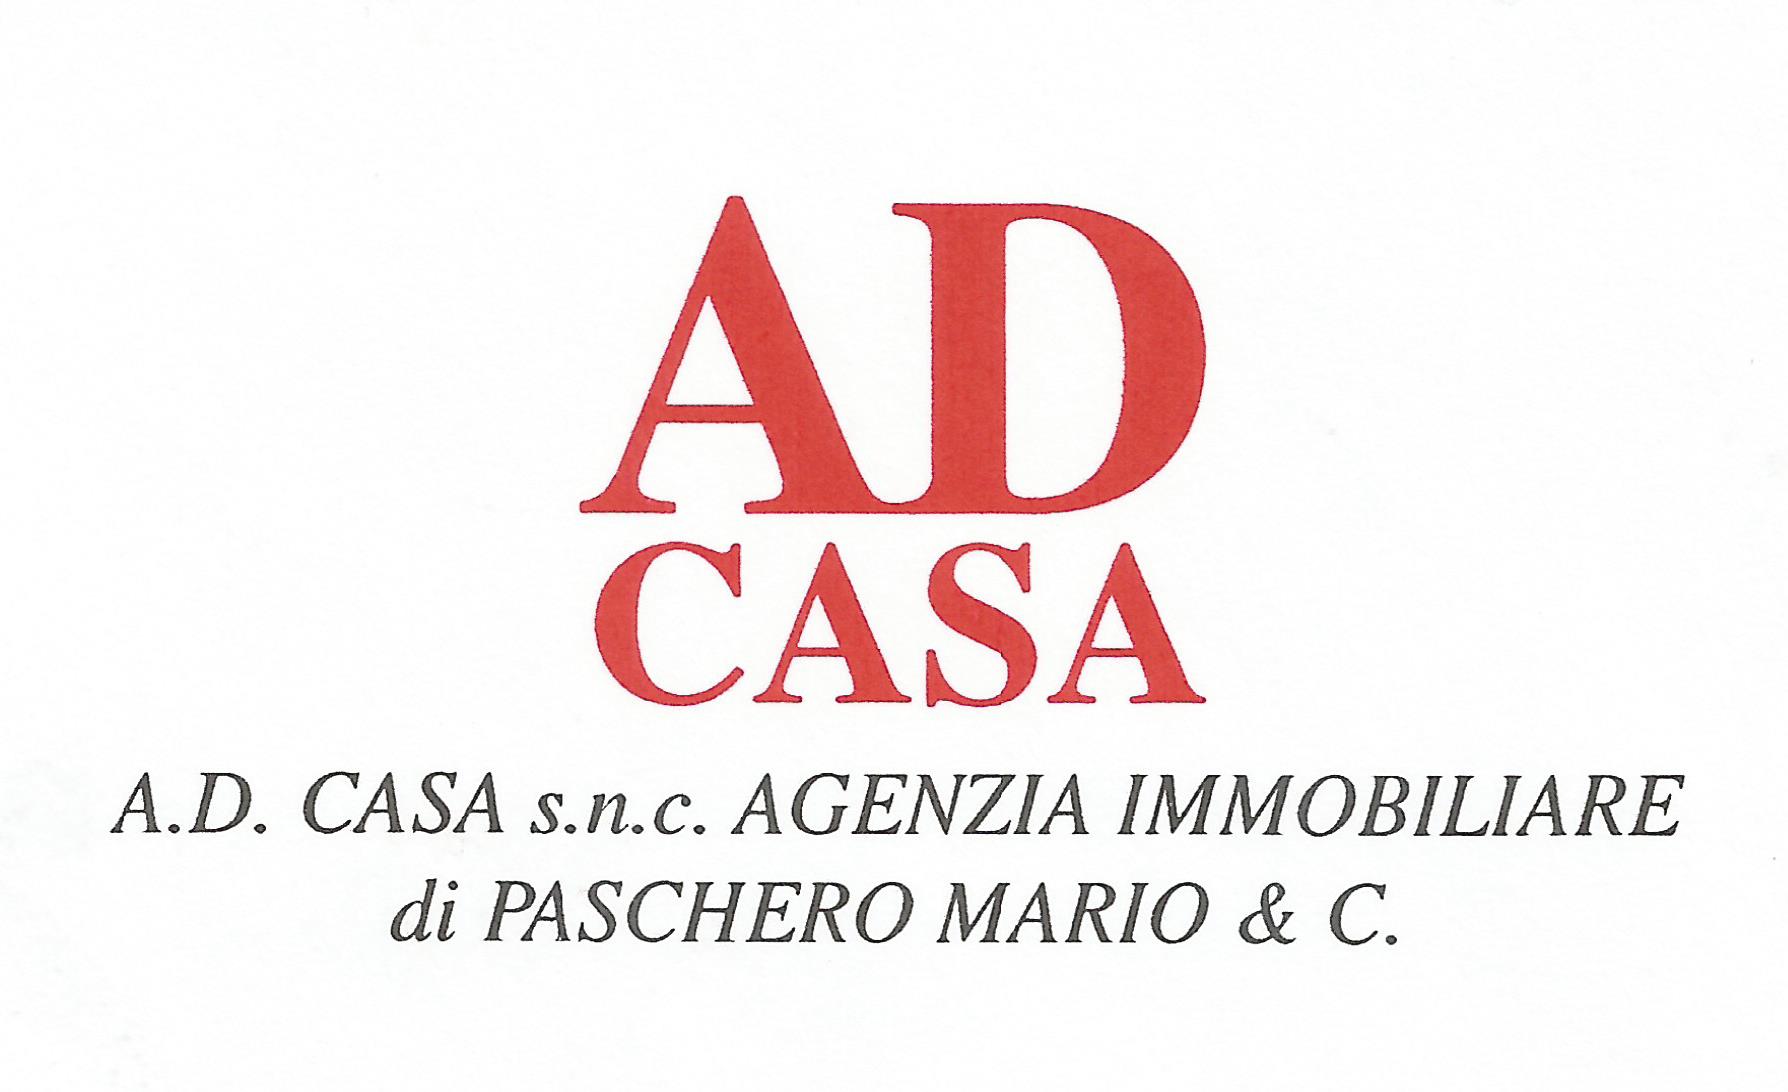 AD CASA S.N.C. AGENZIA IMMOBILIARE DI PASCHERO MARIO & C.